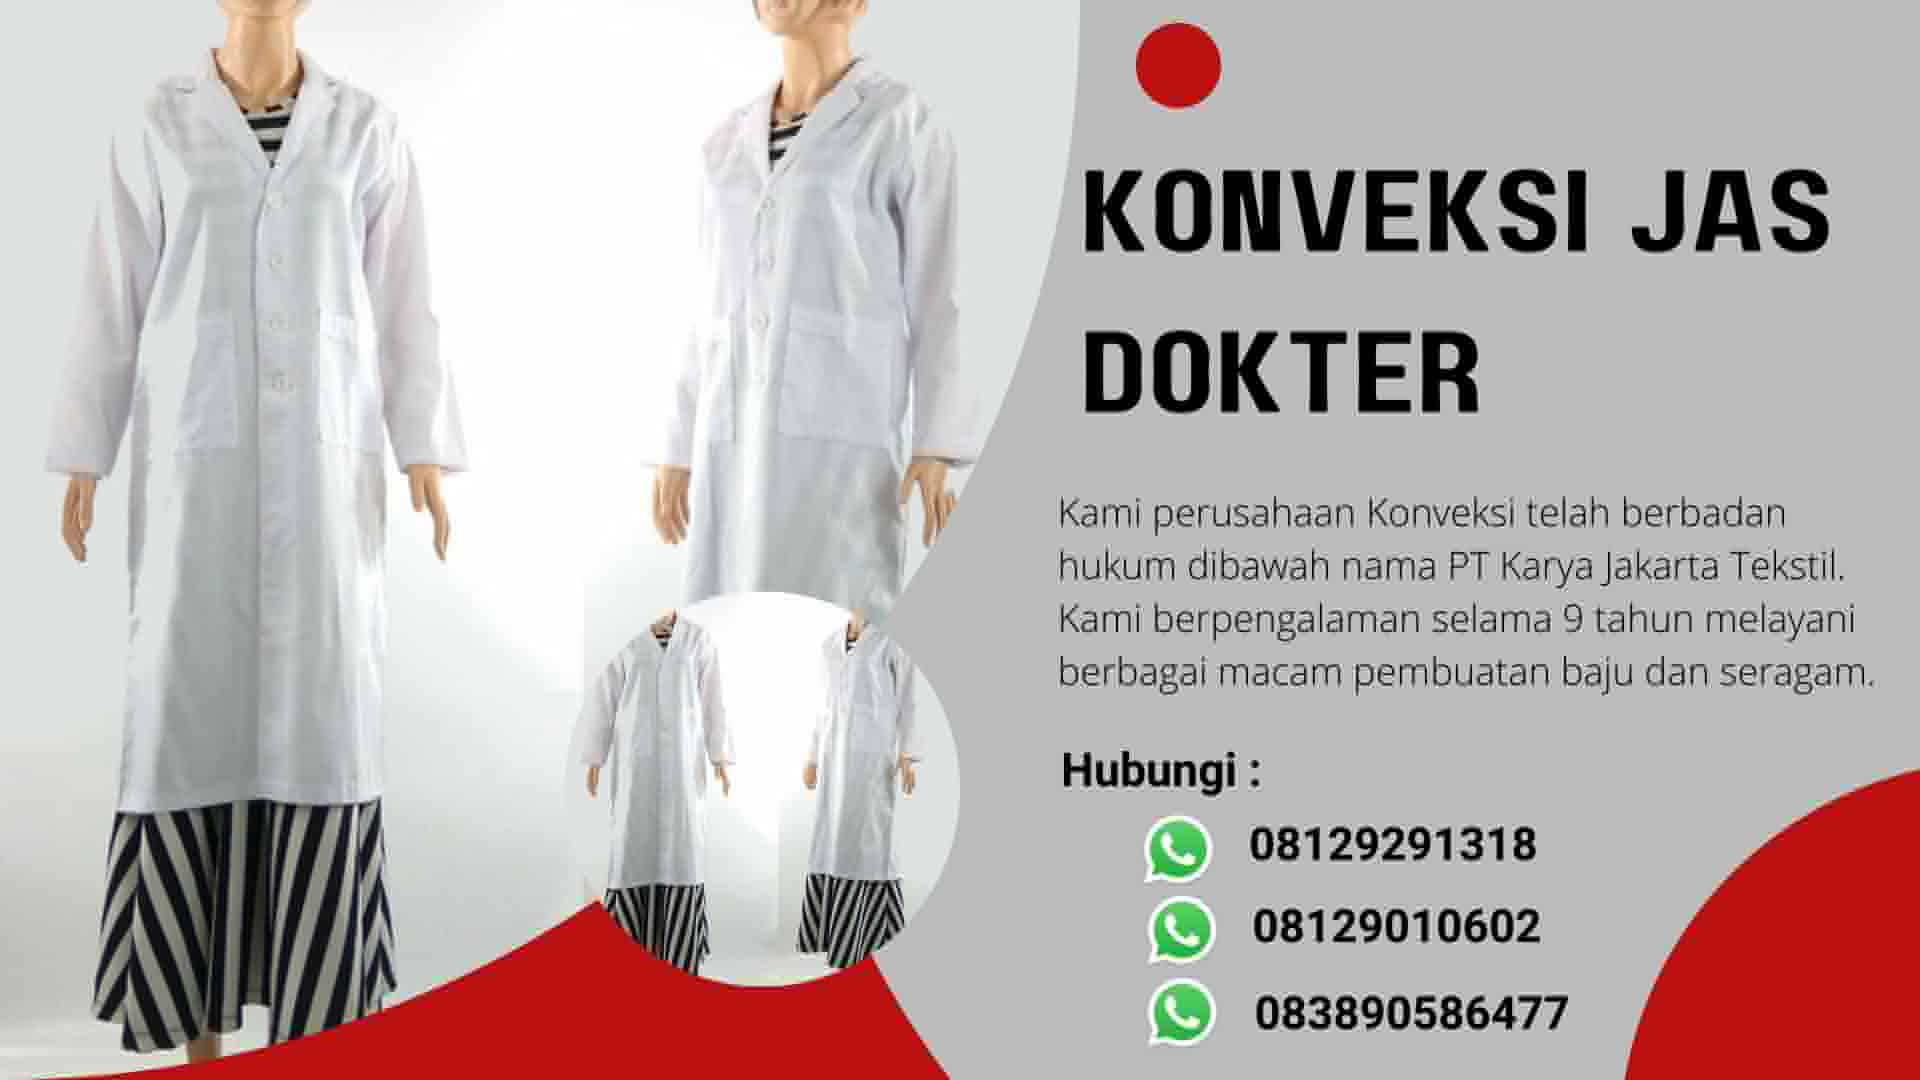 Penawaran Terbatas Harga Istimewa Konveksi Jas Dokter Berkualitas di Jakarta, Hubungi WA 08129291318